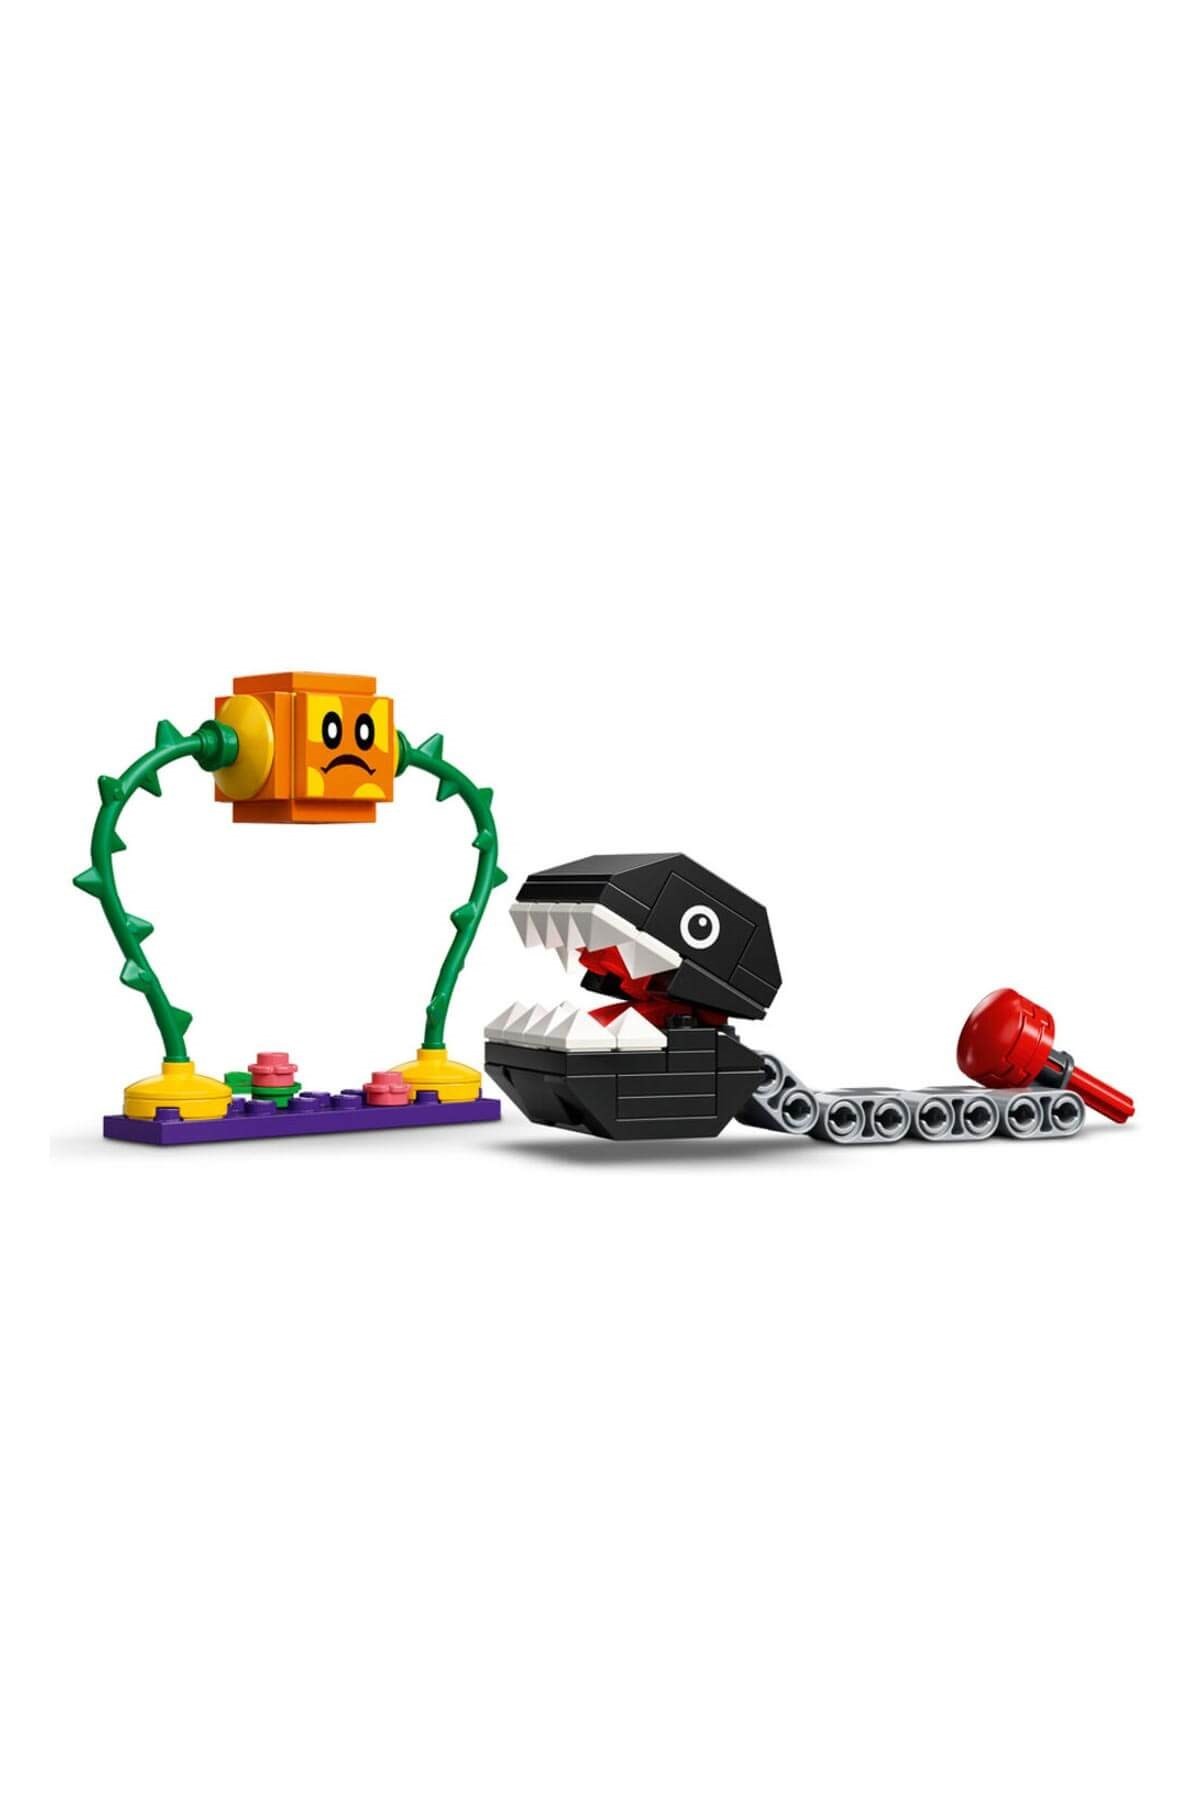 Lego Mario Chain Chomp Orman Karşılaşması Ek Macera Seti 71381